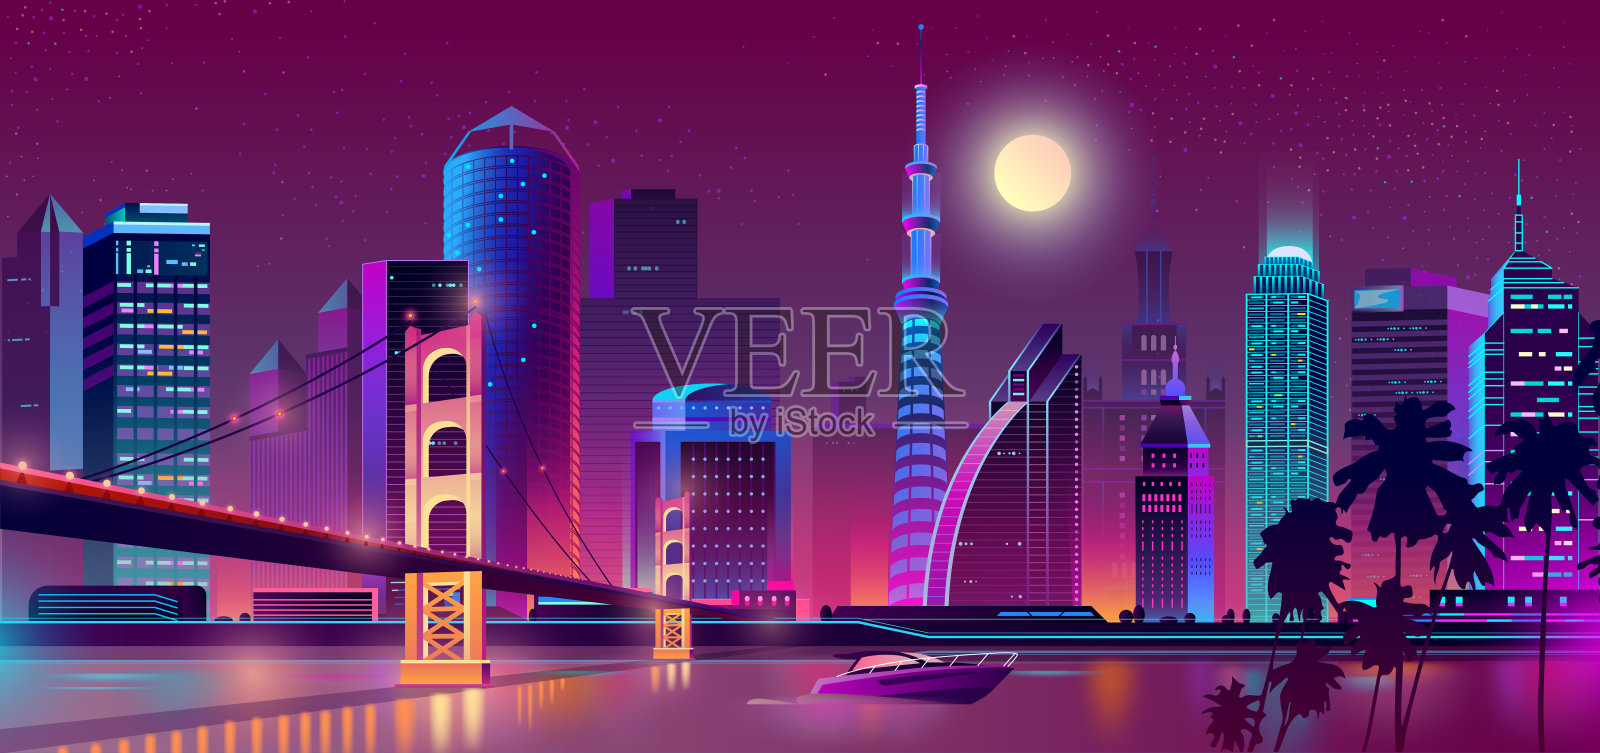 矢量背景与夜间城市霓虹灯插画图片素材